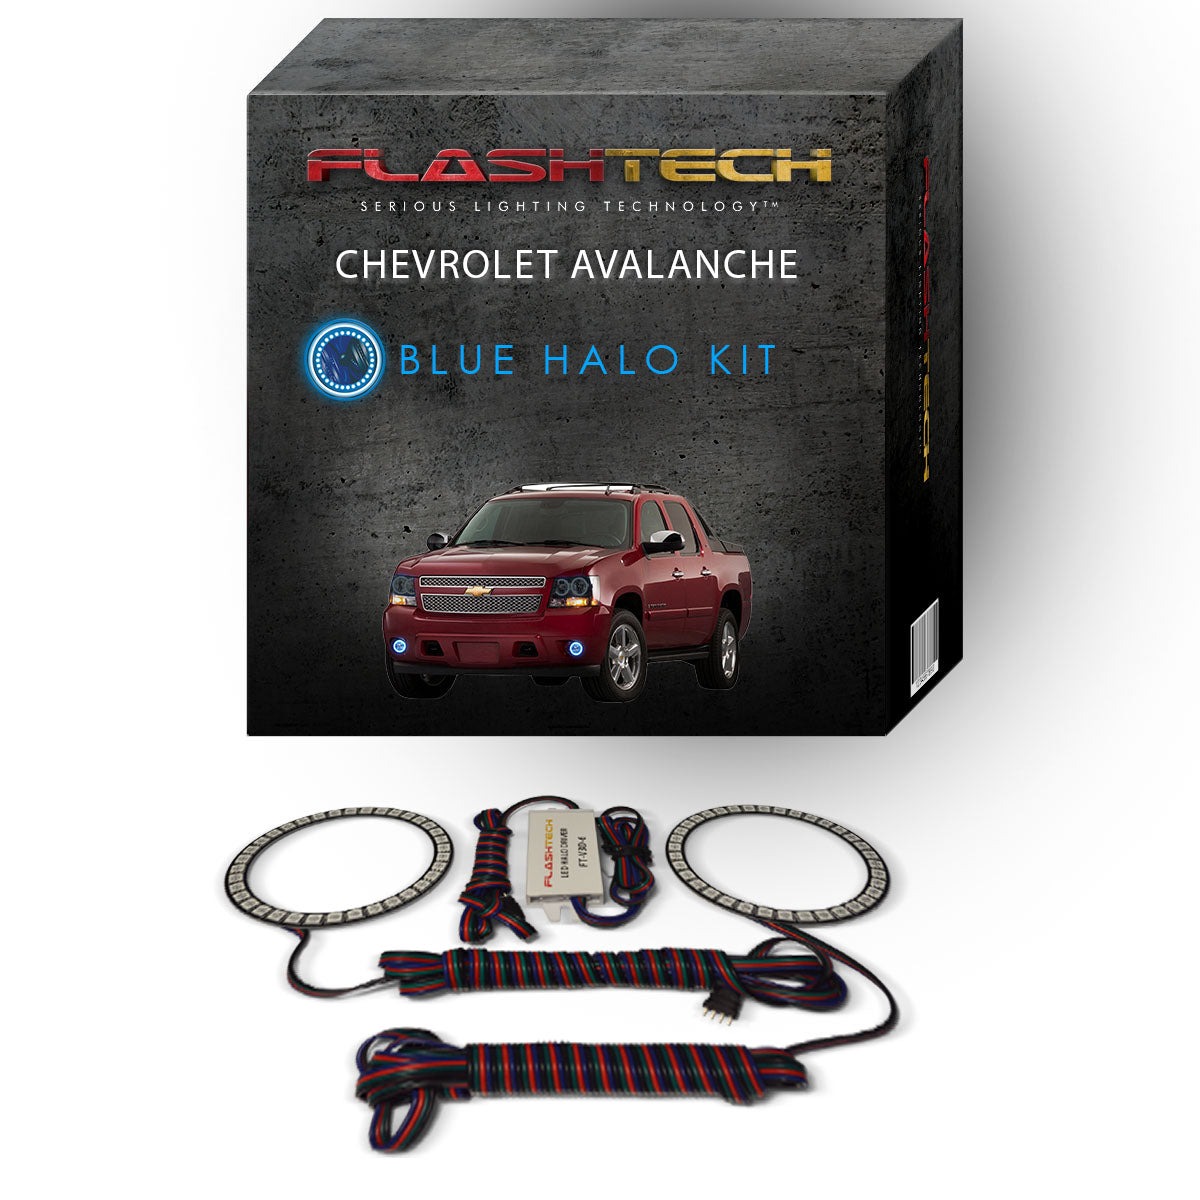 Chevrolet-Avalanche-2007, 2008, 2009, 2010, 2011, 2012, 2013-LED-Halo-Fog Lights-RGB-No Remote-CY-AV0713-V3F